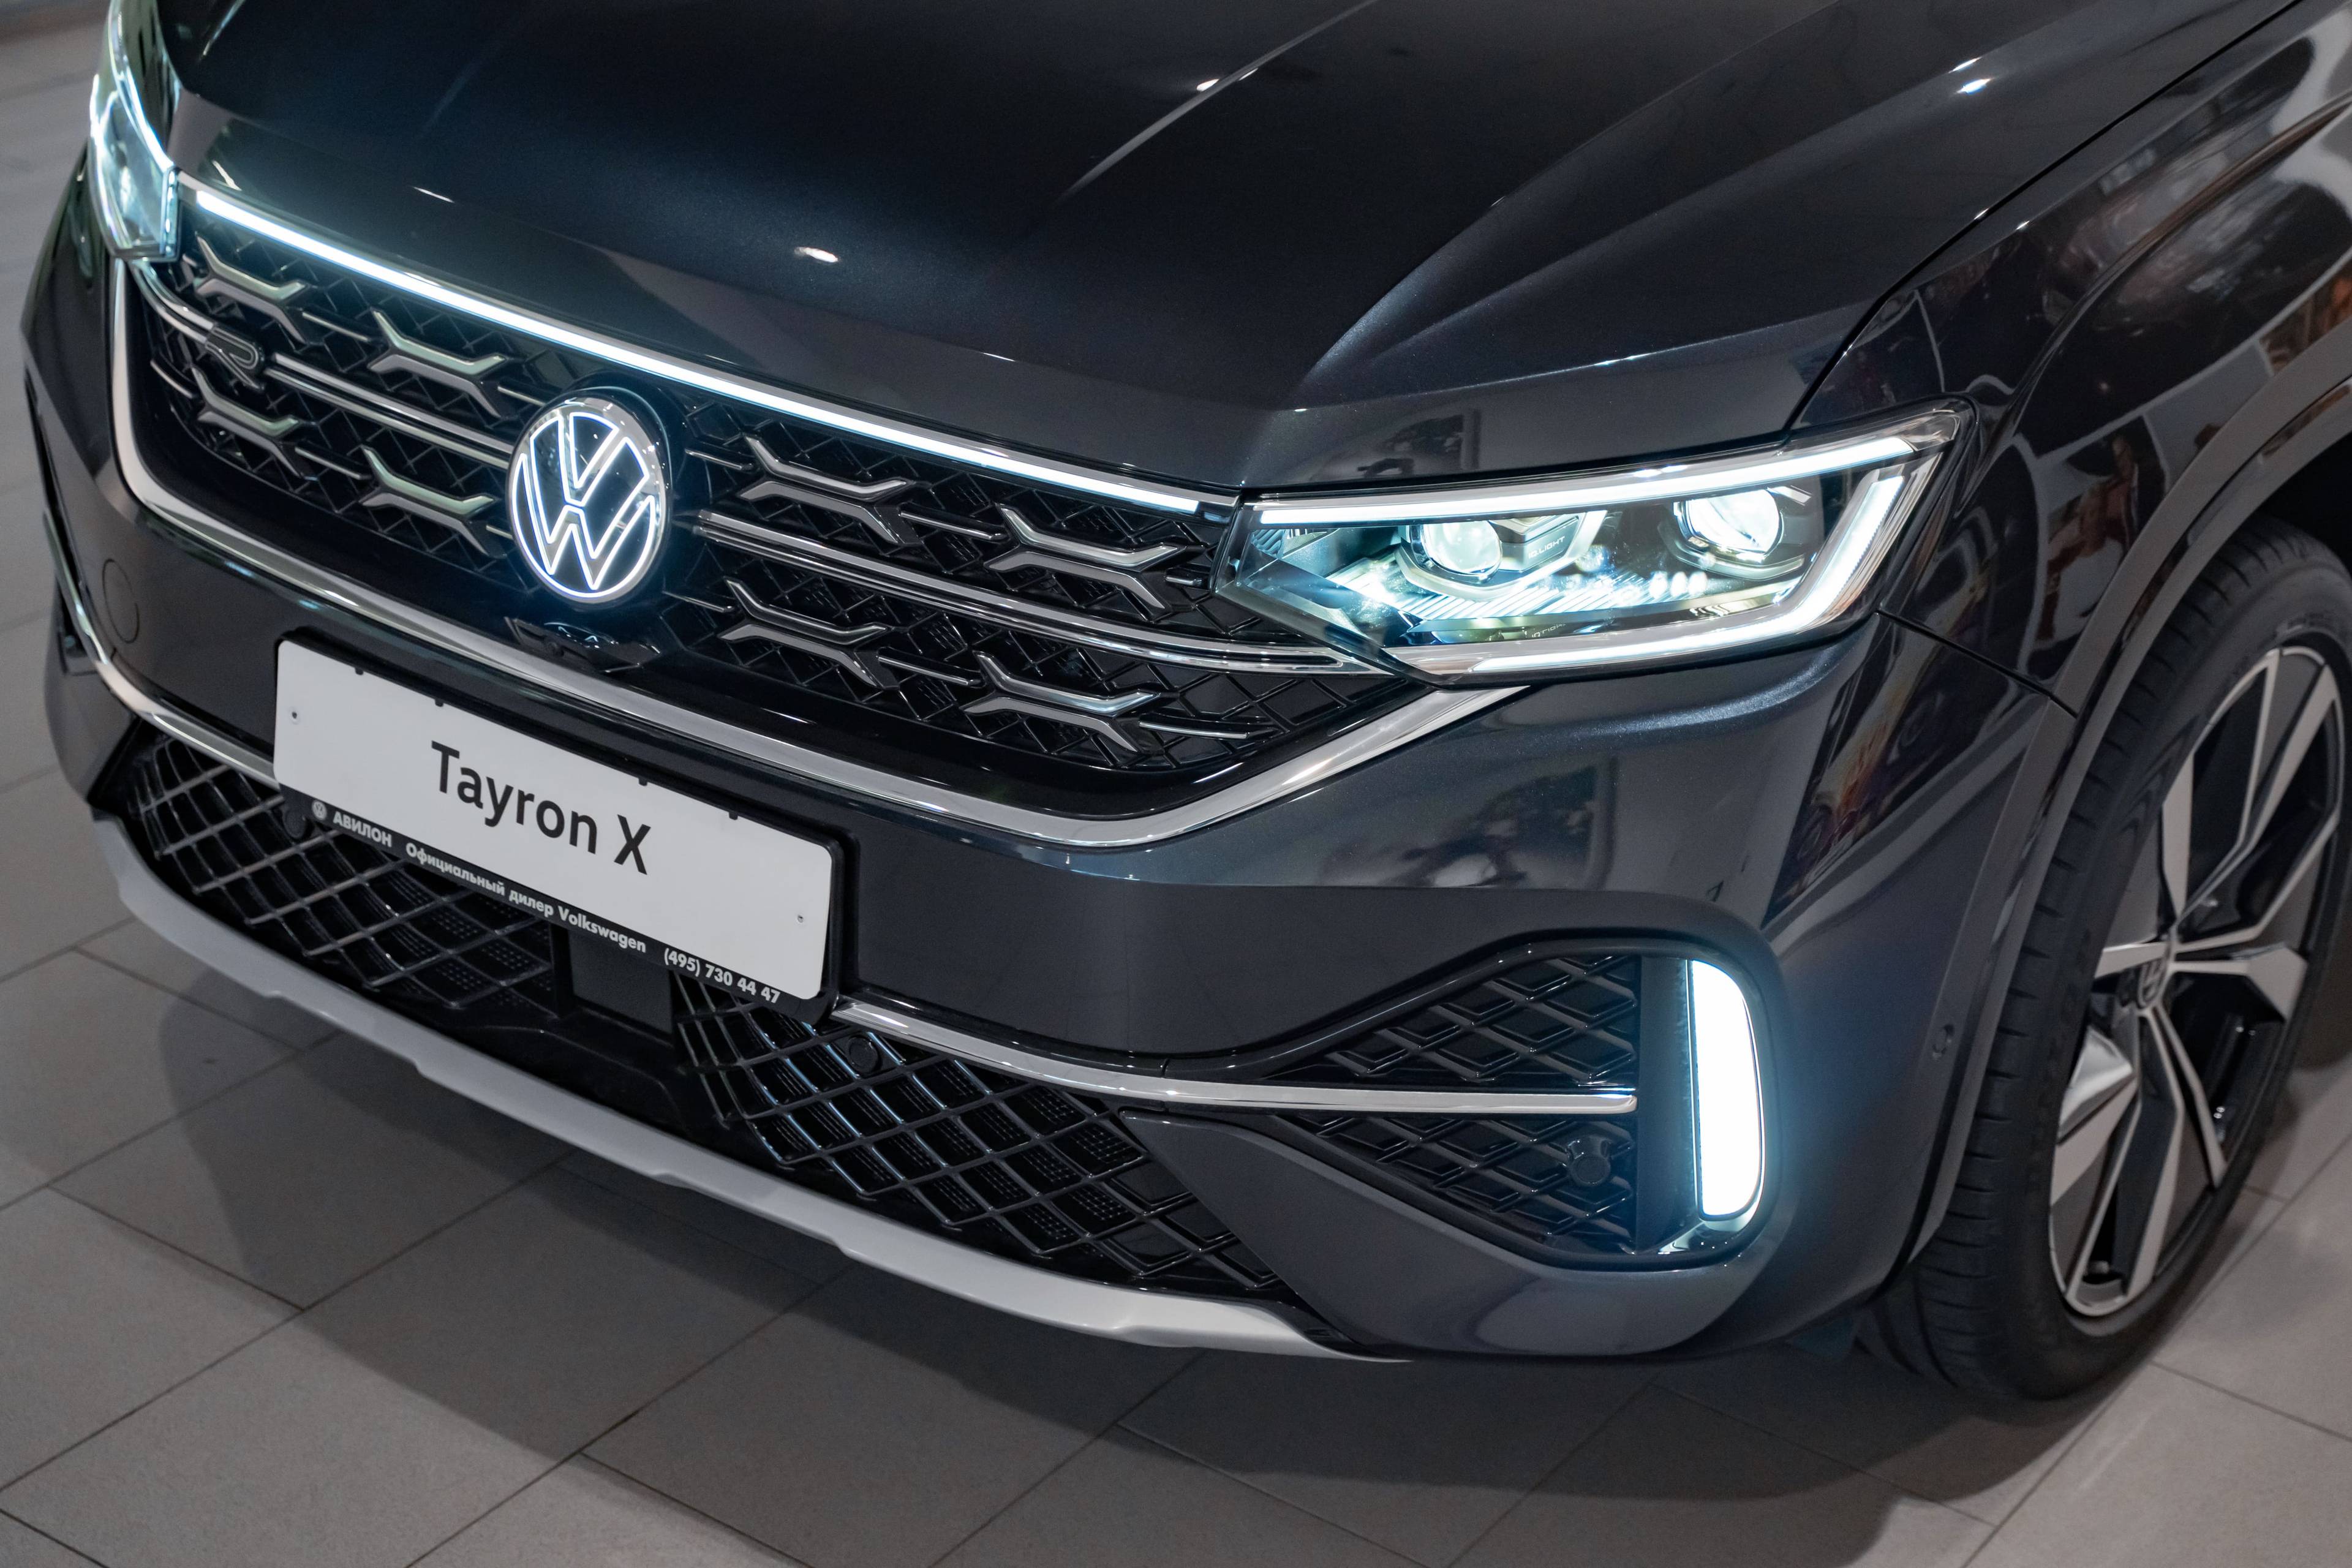 Volkswagen Tayron X Flagship Smart 380TSI 7AT 4Motion